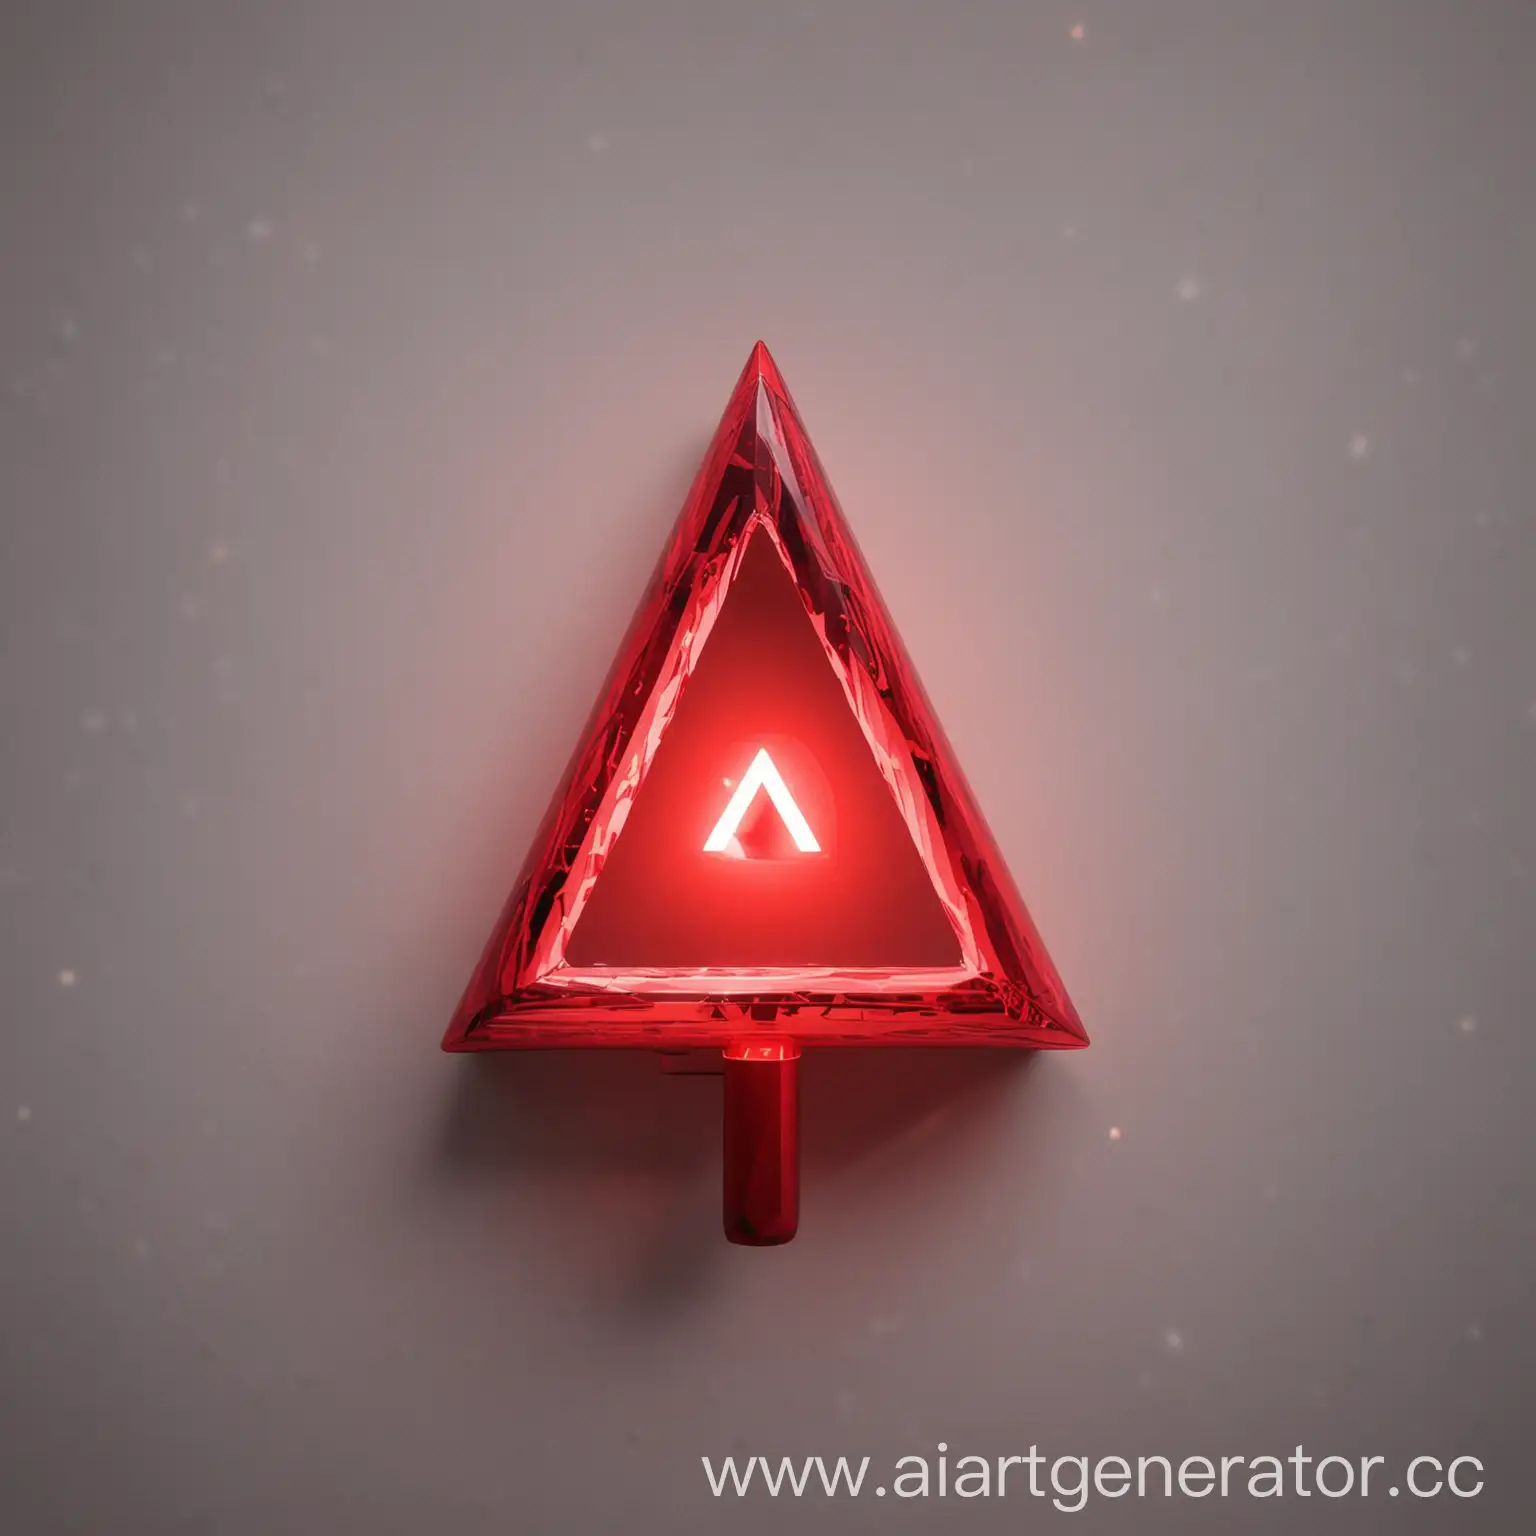 Лайтстик kpop солиста RINGTONE треугольной формы в красных тонах  